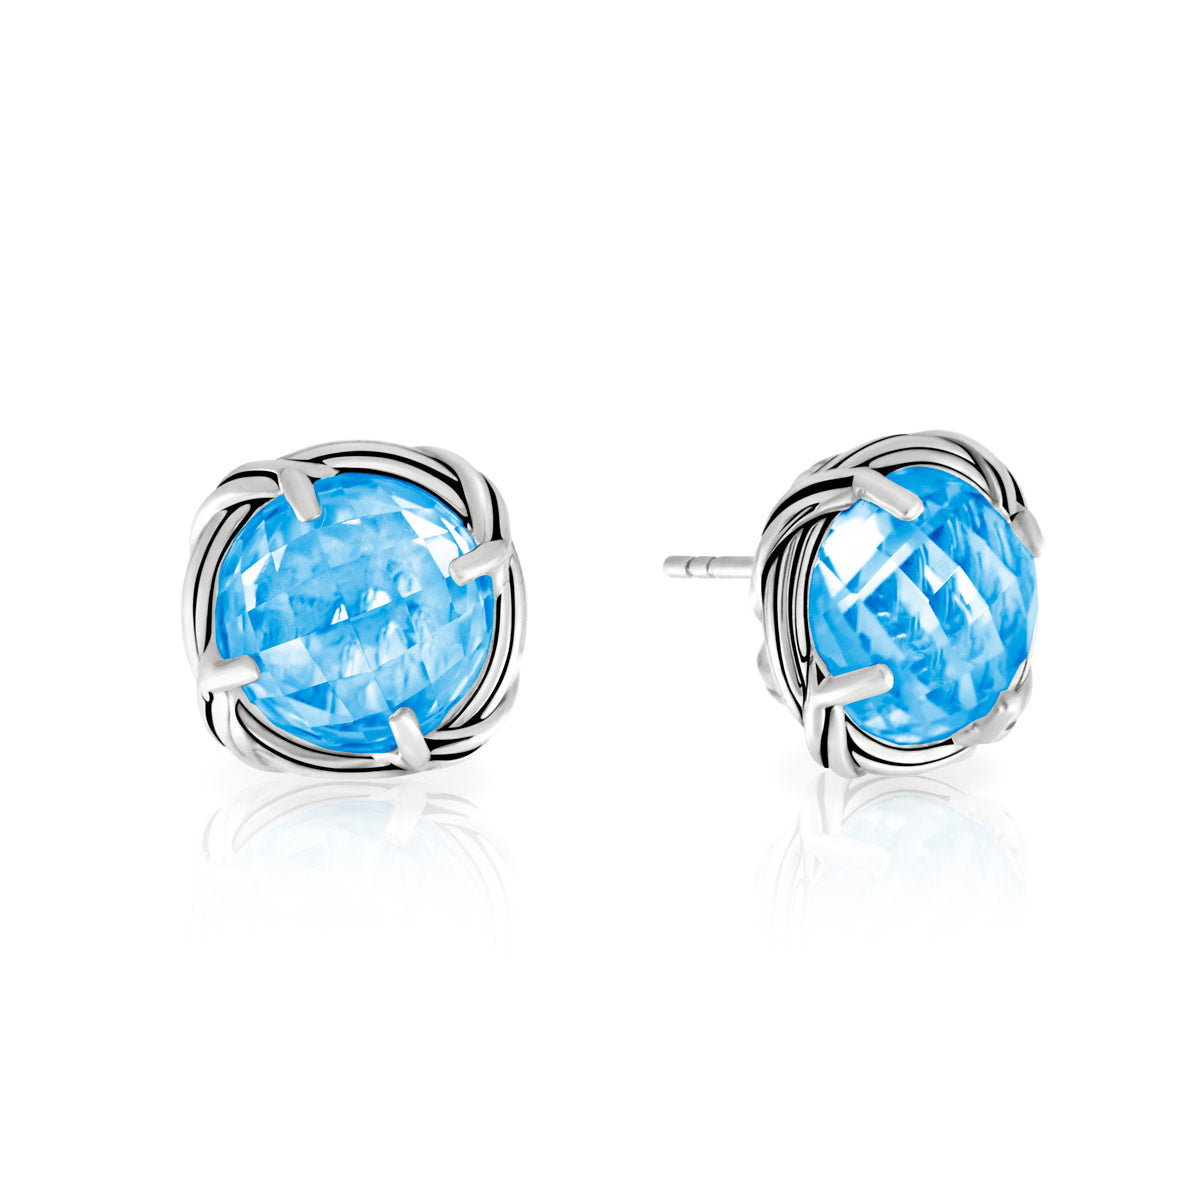 Sterling silver Blue Topaz stud earrings